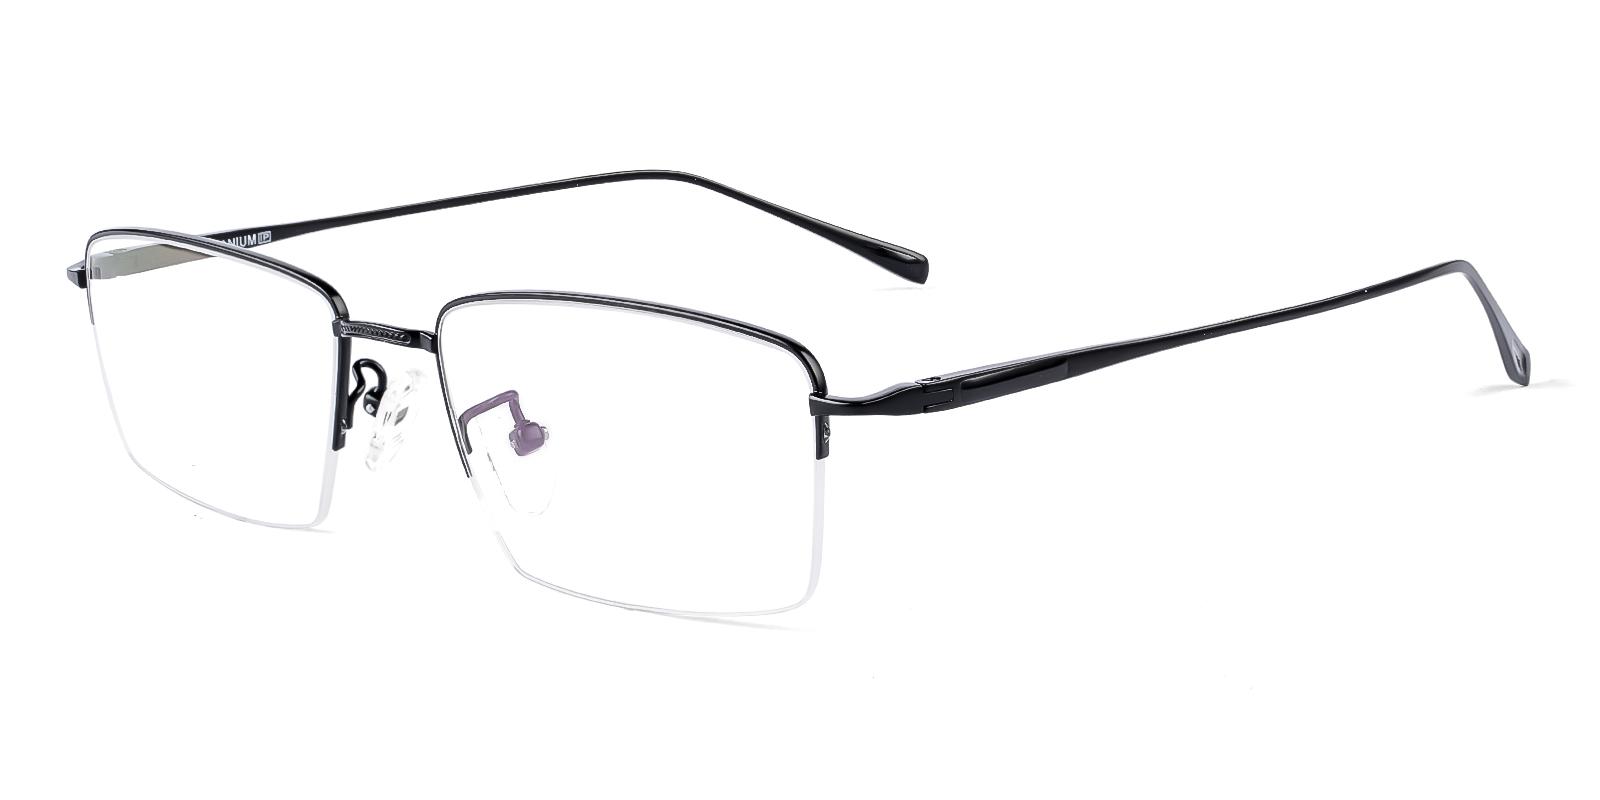 Talike Black Titanium Eyeglasses , NosePads Frames from ABBE Glasses